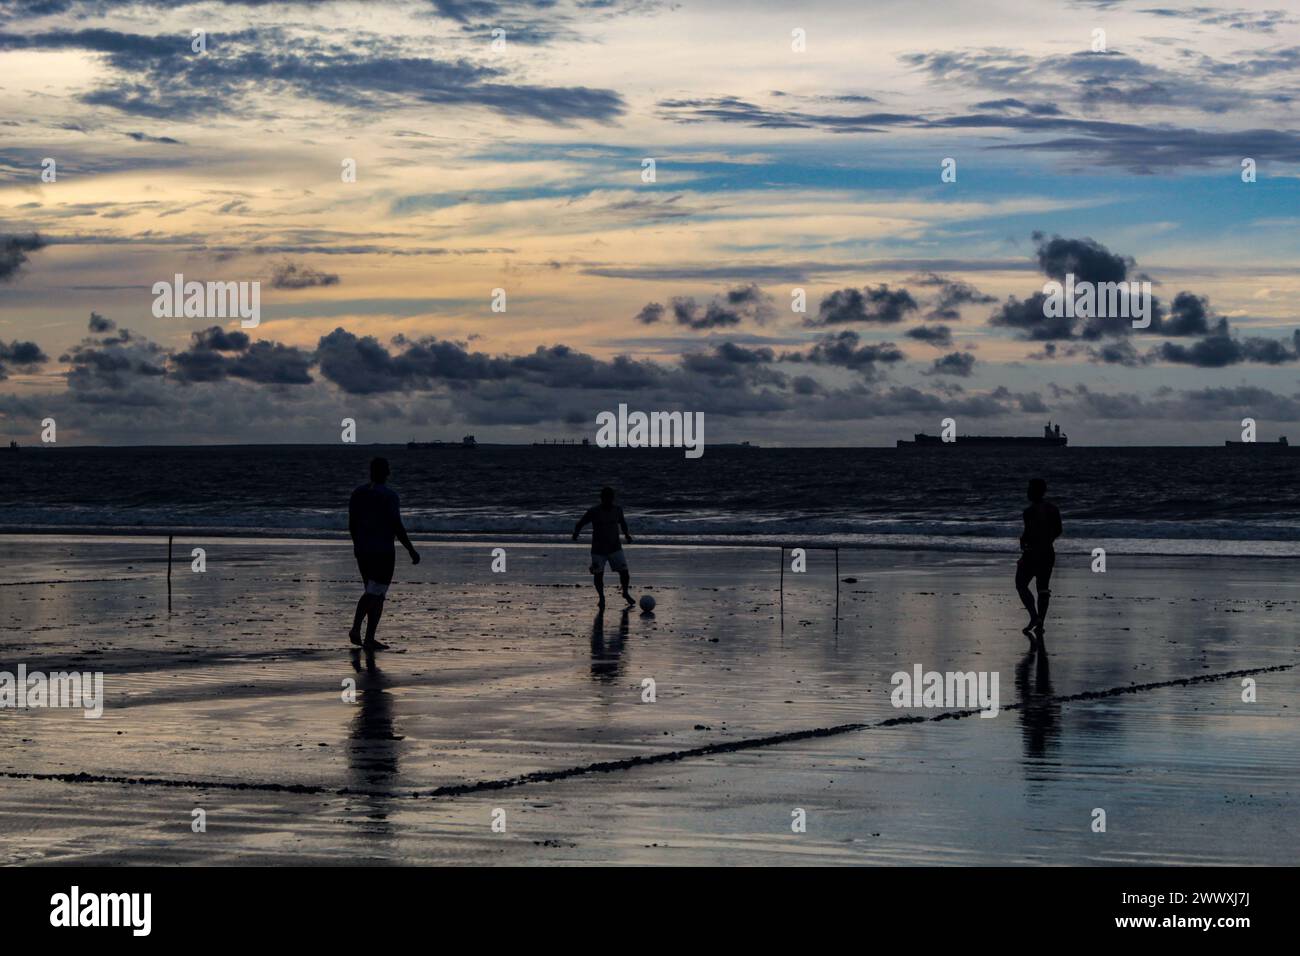 Sonnenuntergang am Strand von Olho D'agua in São Luís, Maranhão, Brasilien, Nordosten Brasiliens, mit einigen Silhouetten von Fußballspielern. Stockfoto